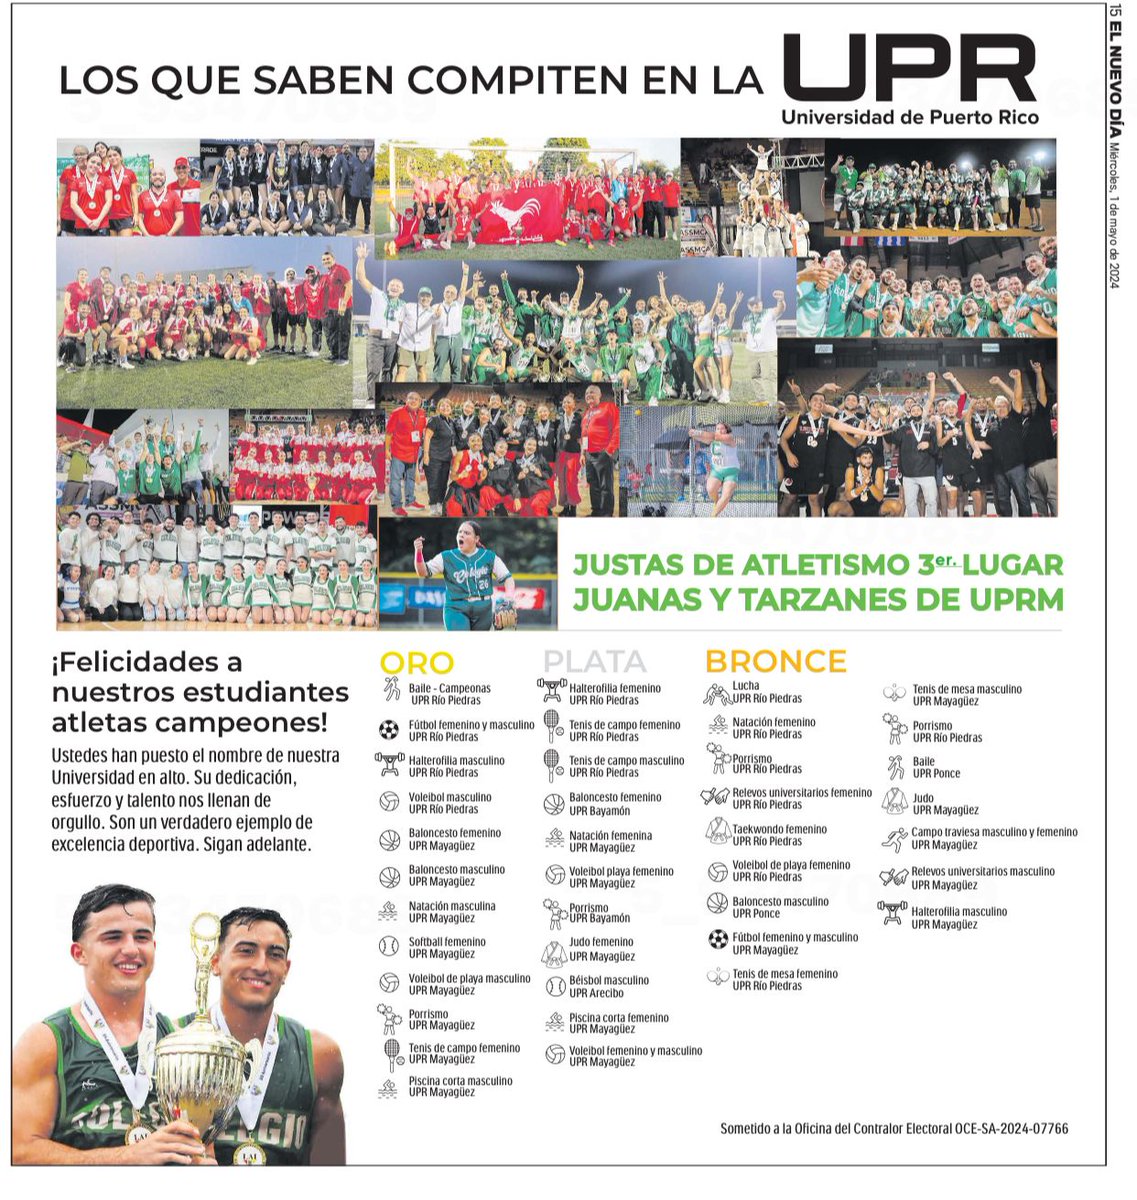 ¡Los que saben compiten en la #UPR! Felicitamos a todos nuestros atletas que participaron durante los eventos del Festival deportivo de la #JUSTAS2024 #LAI. Hicieron un trabajo extraordinario en cada uno de los recintos y unidades, y el resultado lo demuestra.